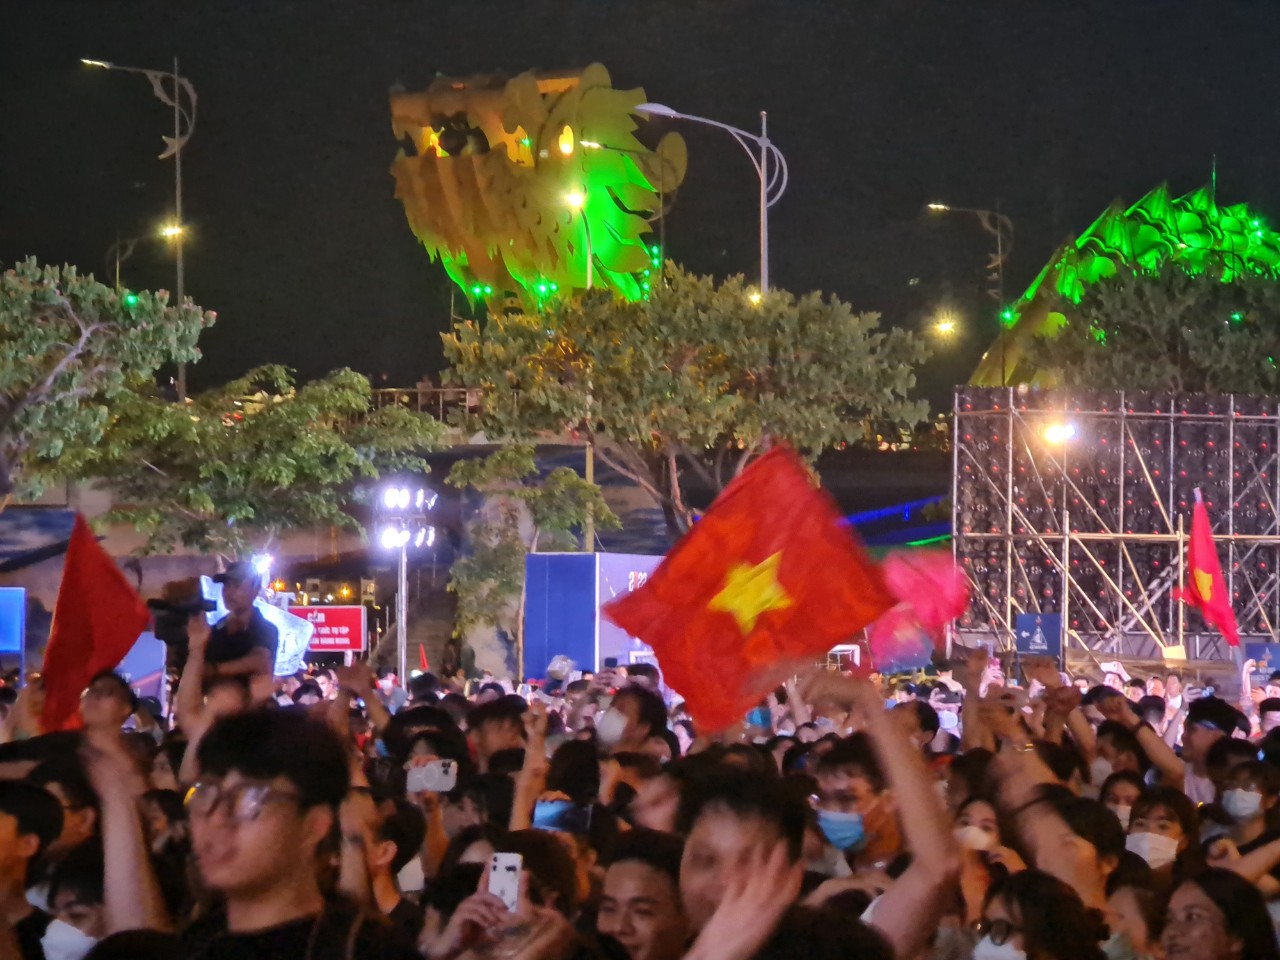 Sau thành công của Olympic mùa đông ở Pyeongchan, đội tuyển U23 Việt Nam tiếp tục mang đến cho người hâm mộ bóng đá Việt Nam những niềm vui mới. Đến với chúng tôi để nhìn lại những khoảnh khắc huy hoàng của U23 Việt Nam trong các giải đấu gần đây.